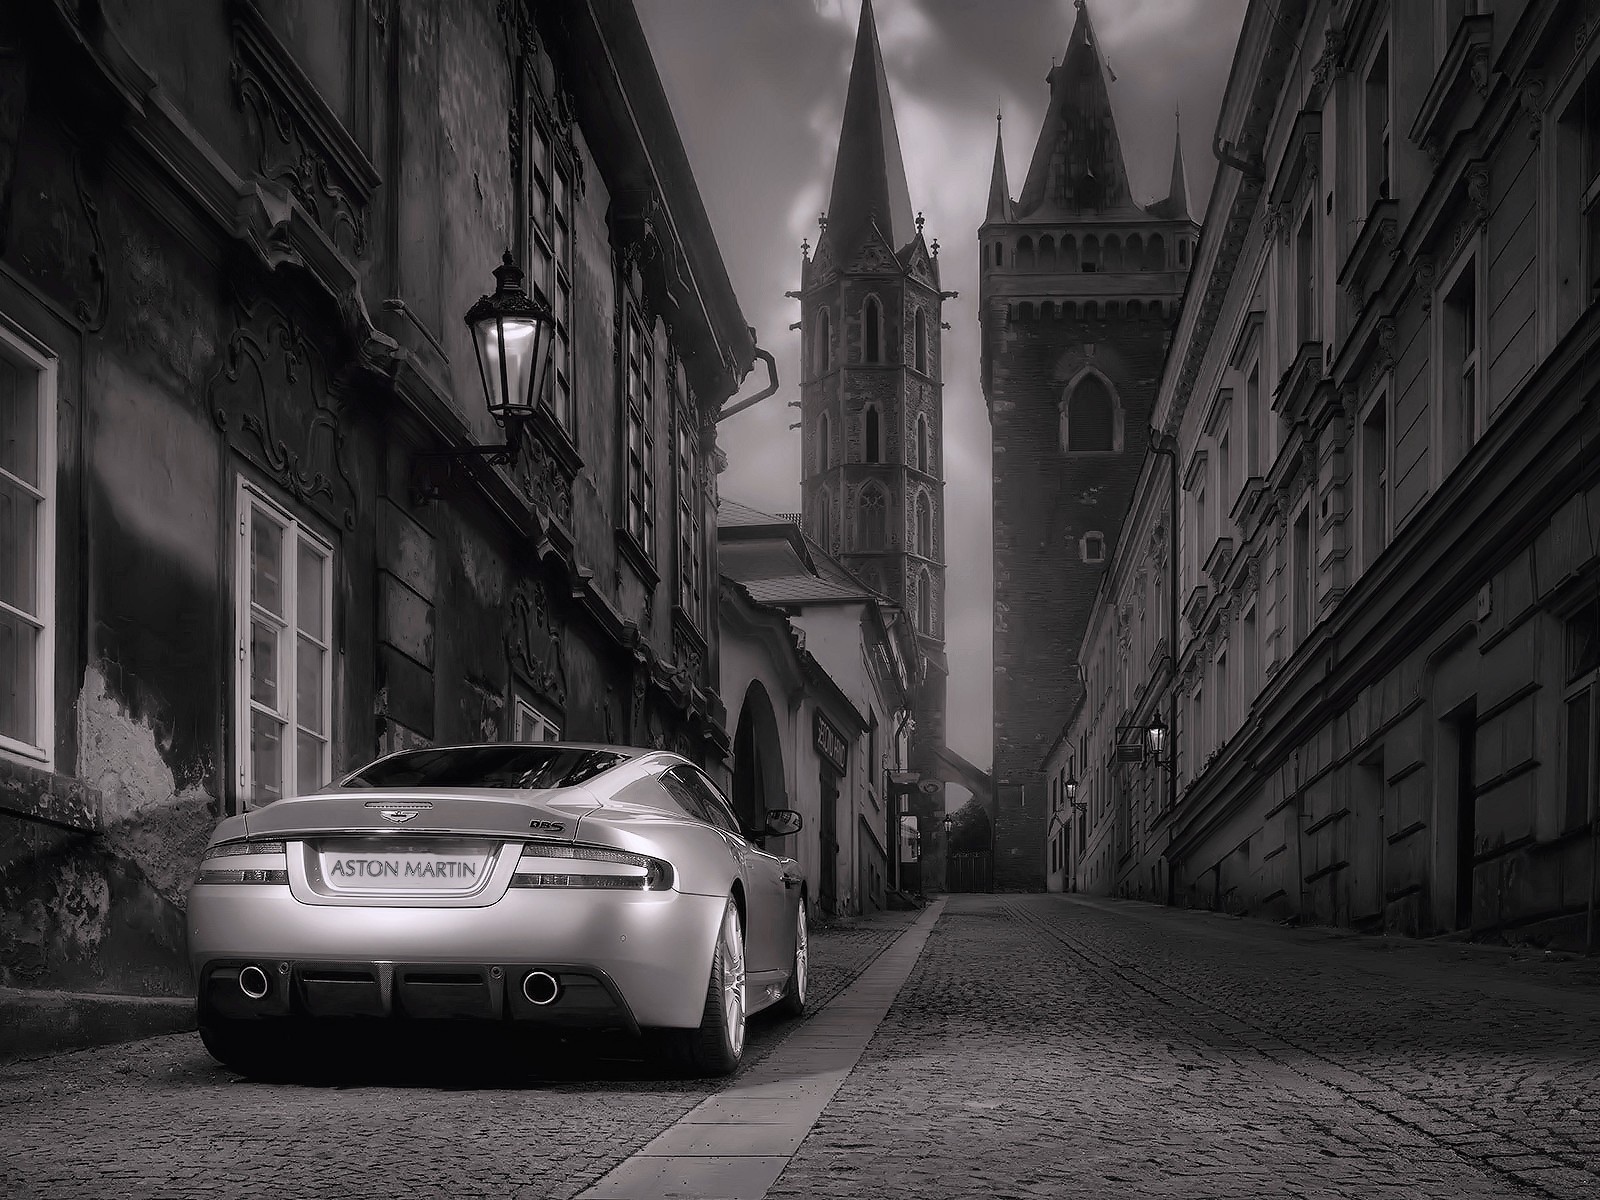 Gorgeous gray Aston Martin in the city